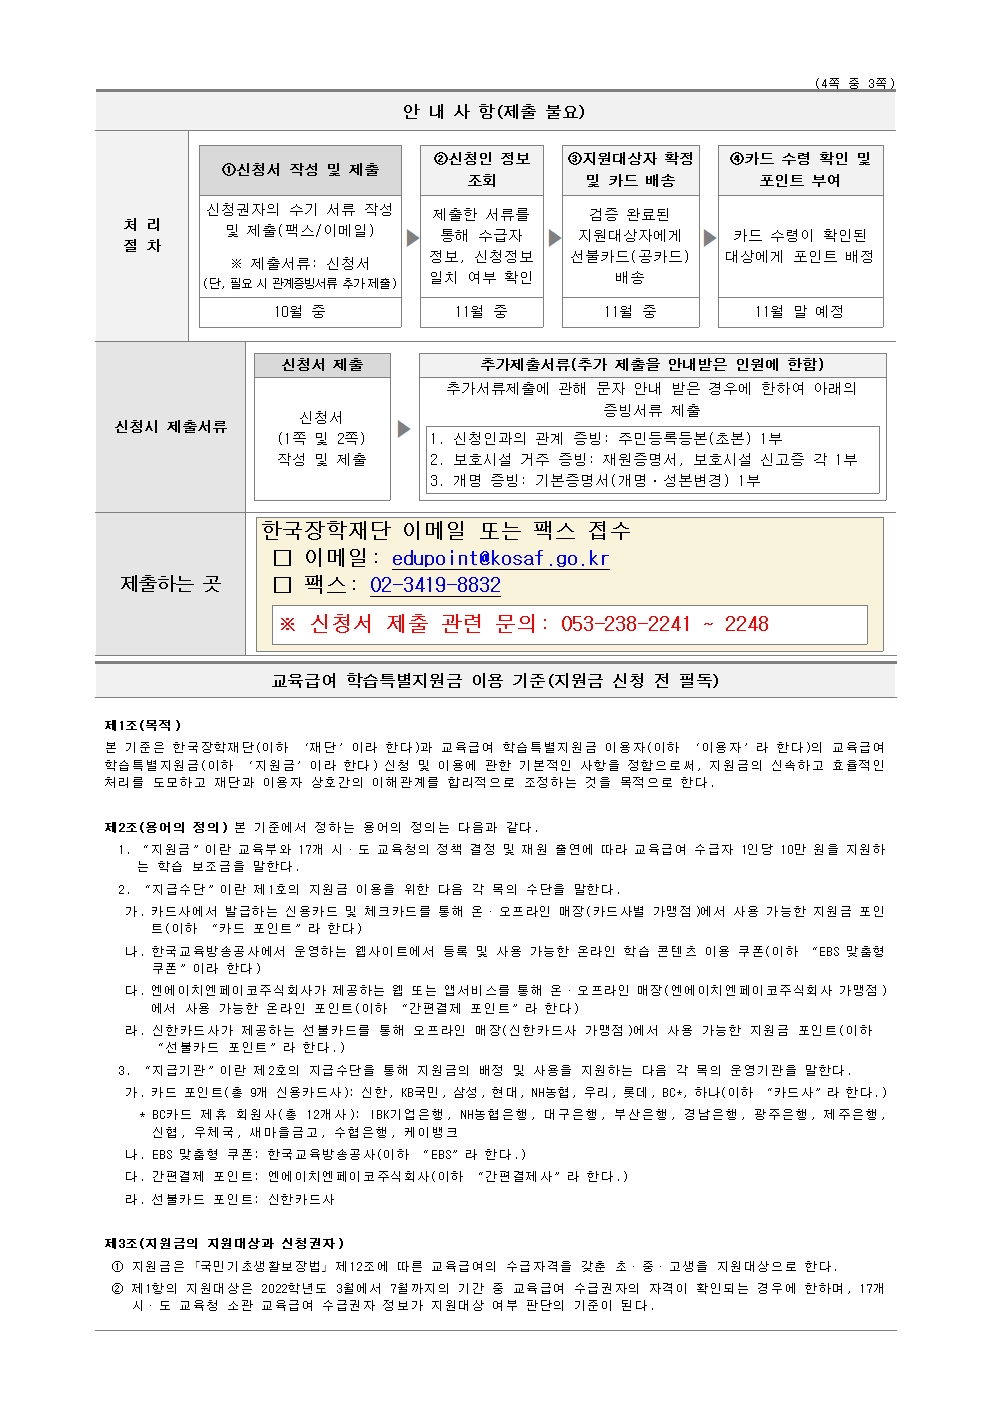 교육급여 학습특별지원금 선불카드 신청 안내문004